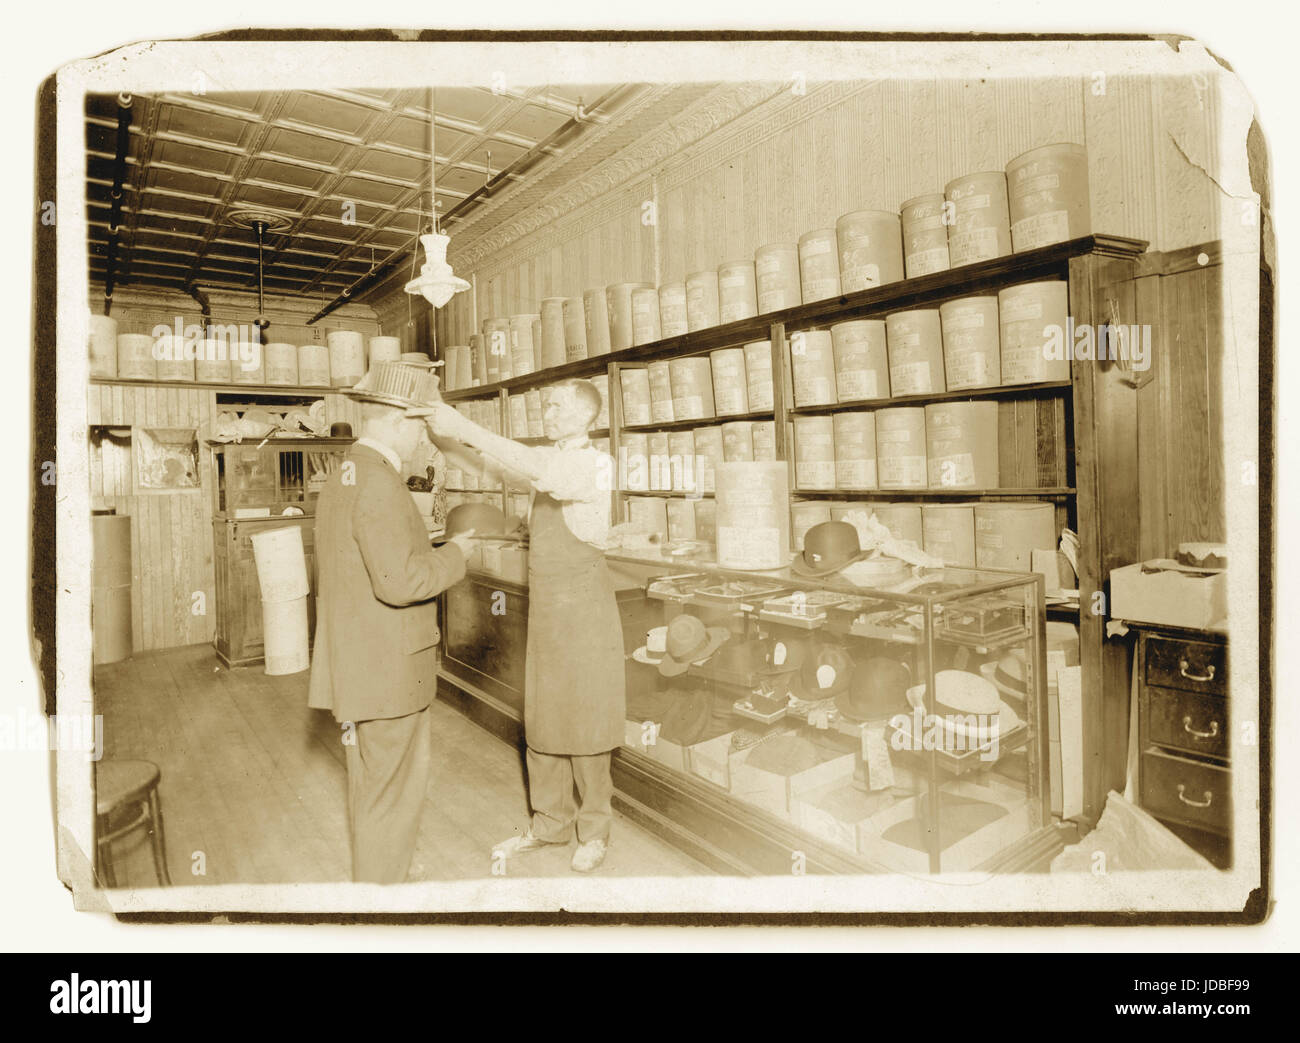 1900 Foto von Hutmacher/Personal oder Assistent, mit einem Kunden verkaufen top Hüte und Stroh Bootsfahrer von seinem ladenlokal verkaufen Hüte in den Feldern C Lukasch der Hutmacher beschriftet, Großbritannien Stockfoto